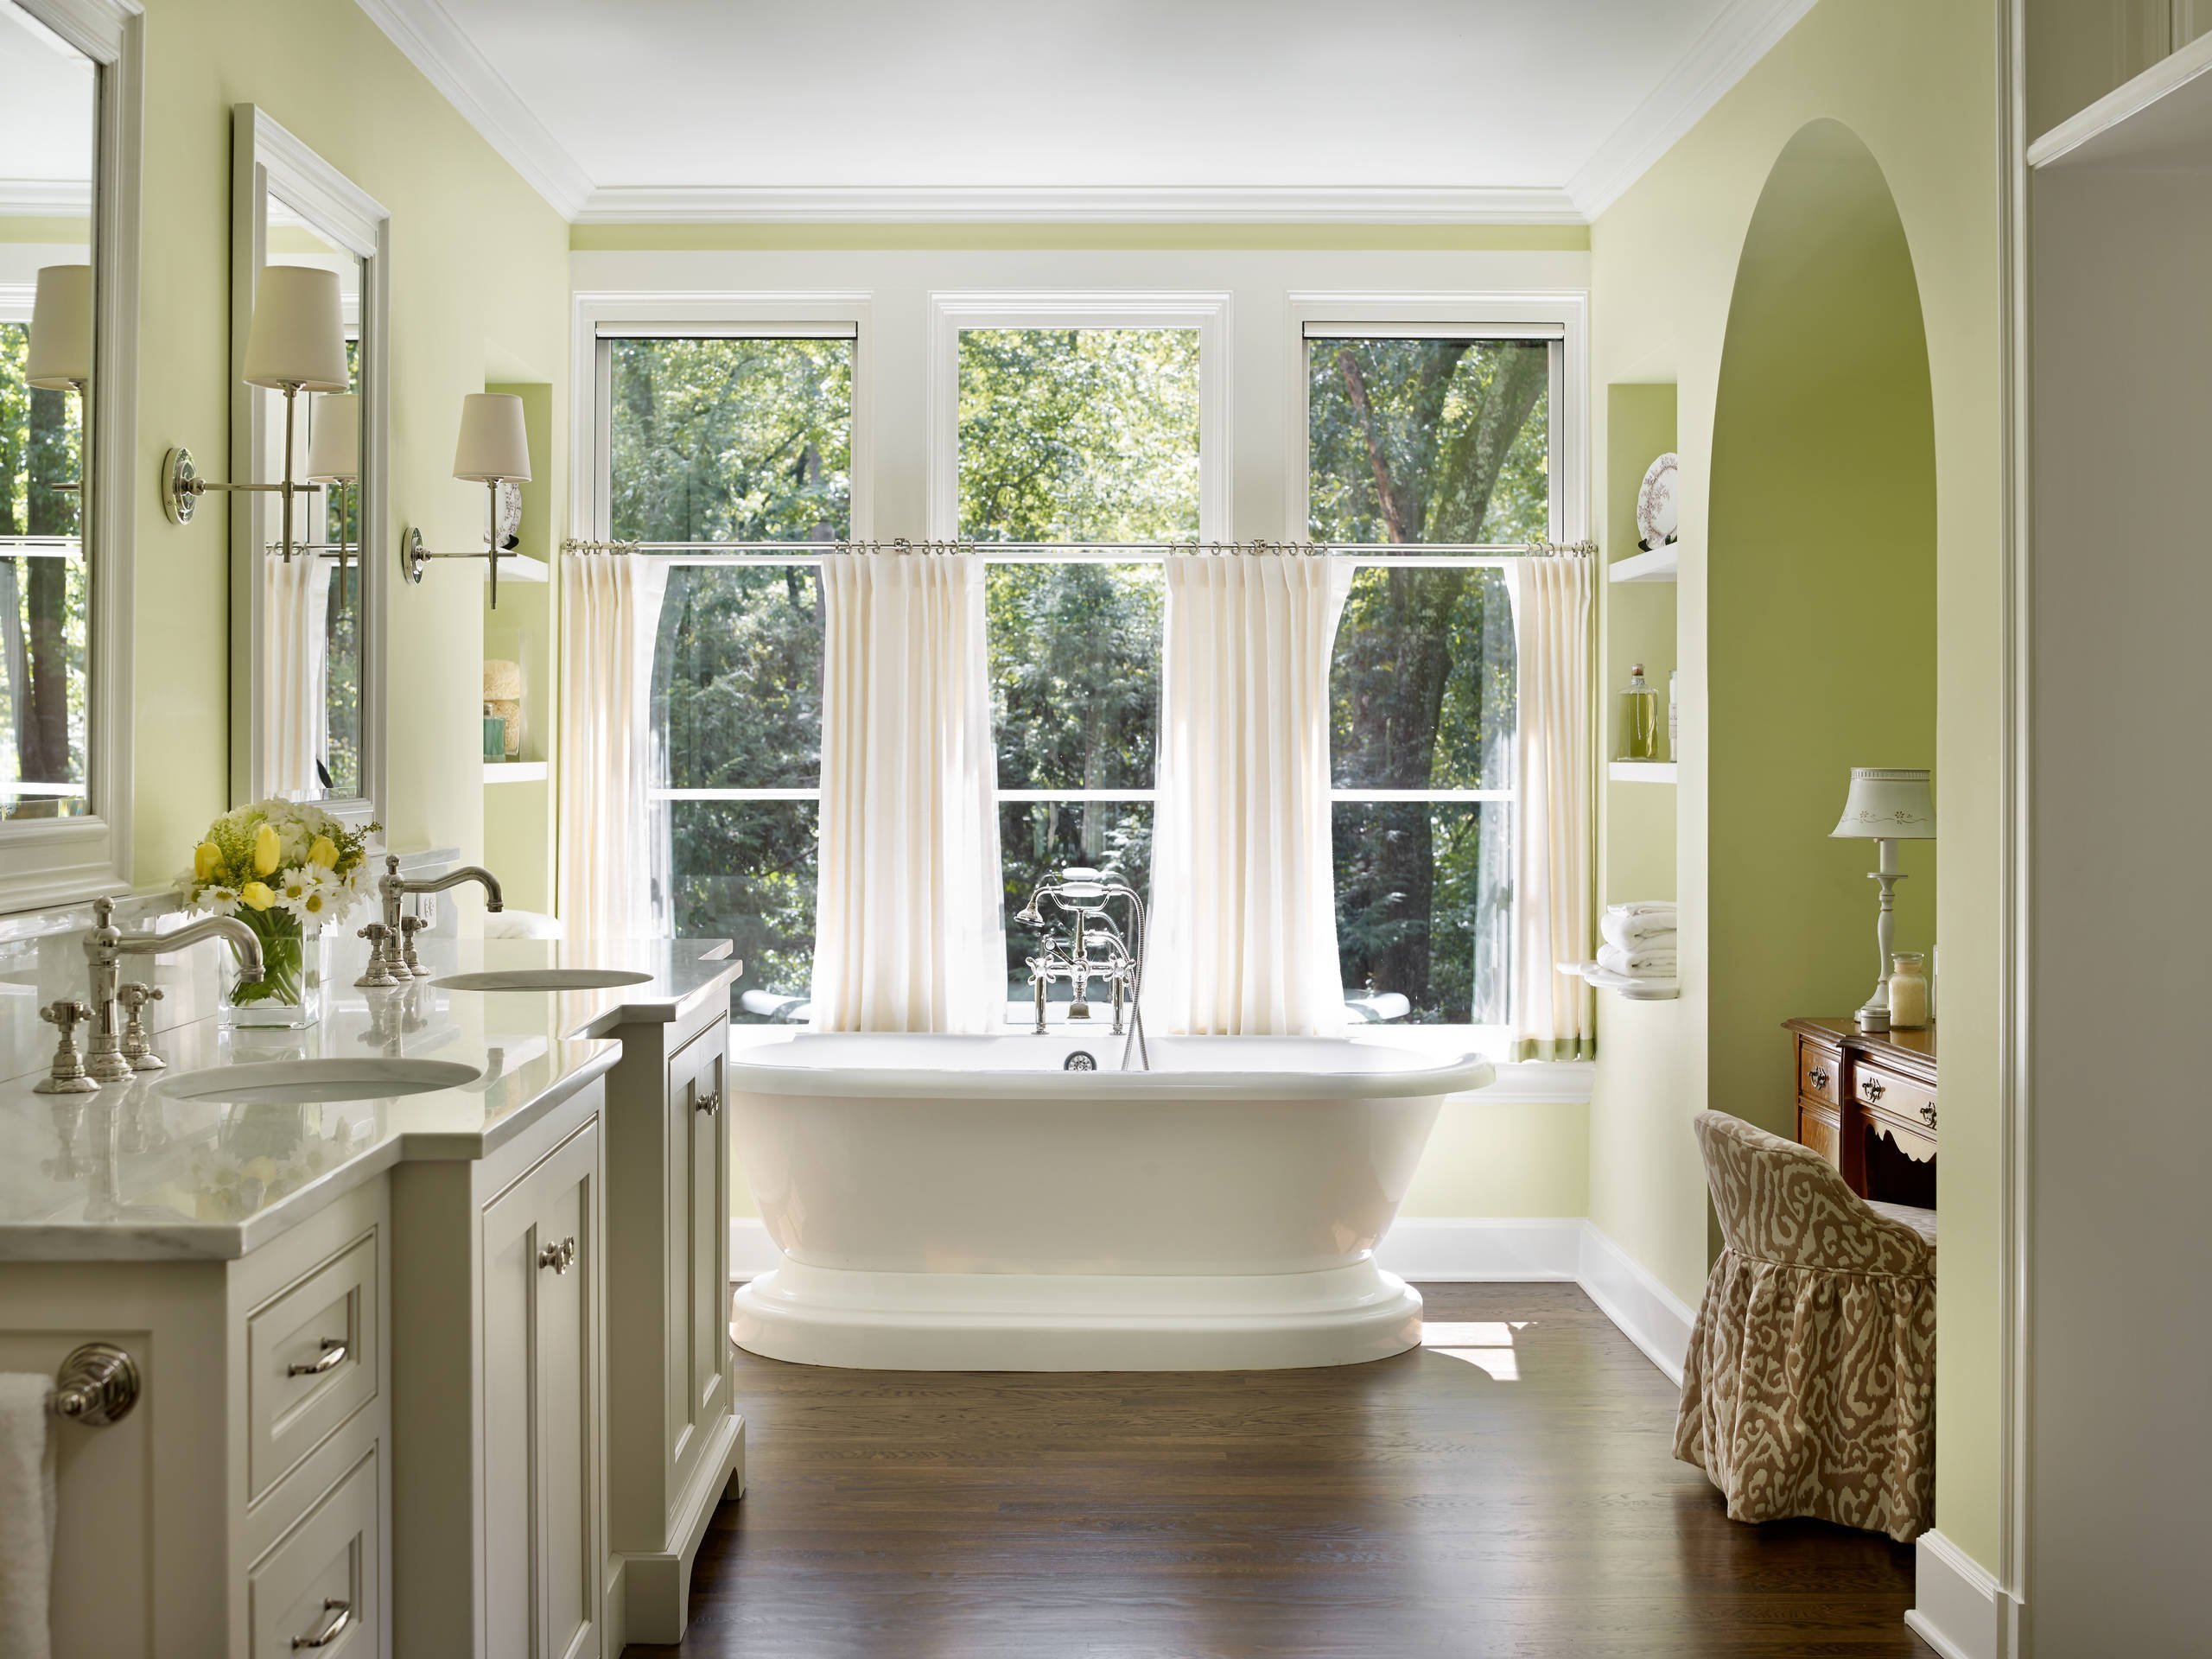 Ванна с большим окном. Ванная комната с окном. Уютная ванная с окном. Ванная комната с большим окном. Интерьер ванны с окном.